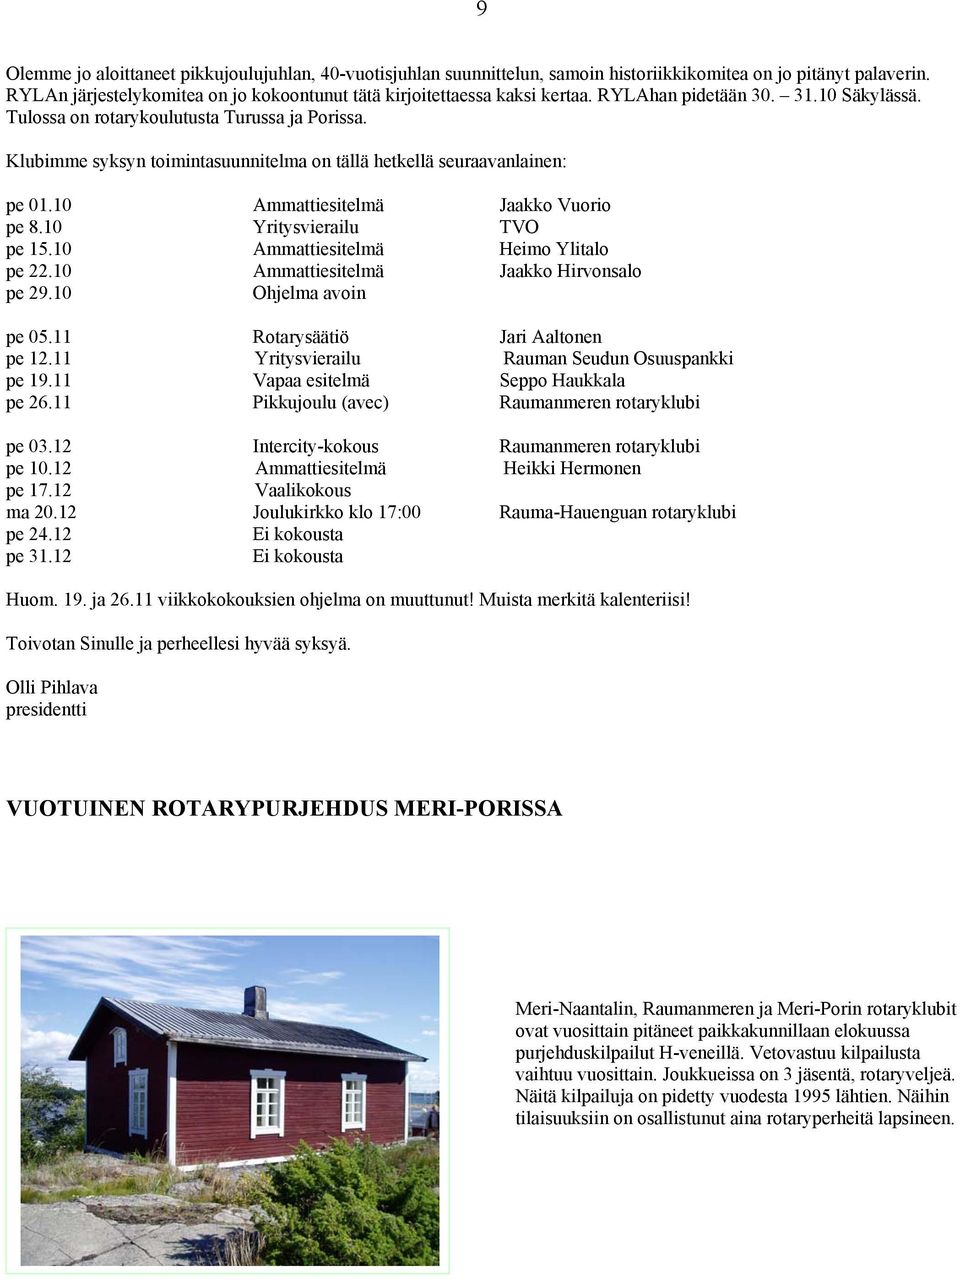 10 Ammattiesitelmä Jaakko Vuorio pe 8.10 Yritysvierailu TVO pe 15.10 Ammattiesitelmä Heimo Ylitalo pe 22.10 Ammattiesitelmä Jaakko Hirvonsalo pe 29.10 Ohjelma avoin pe 05.